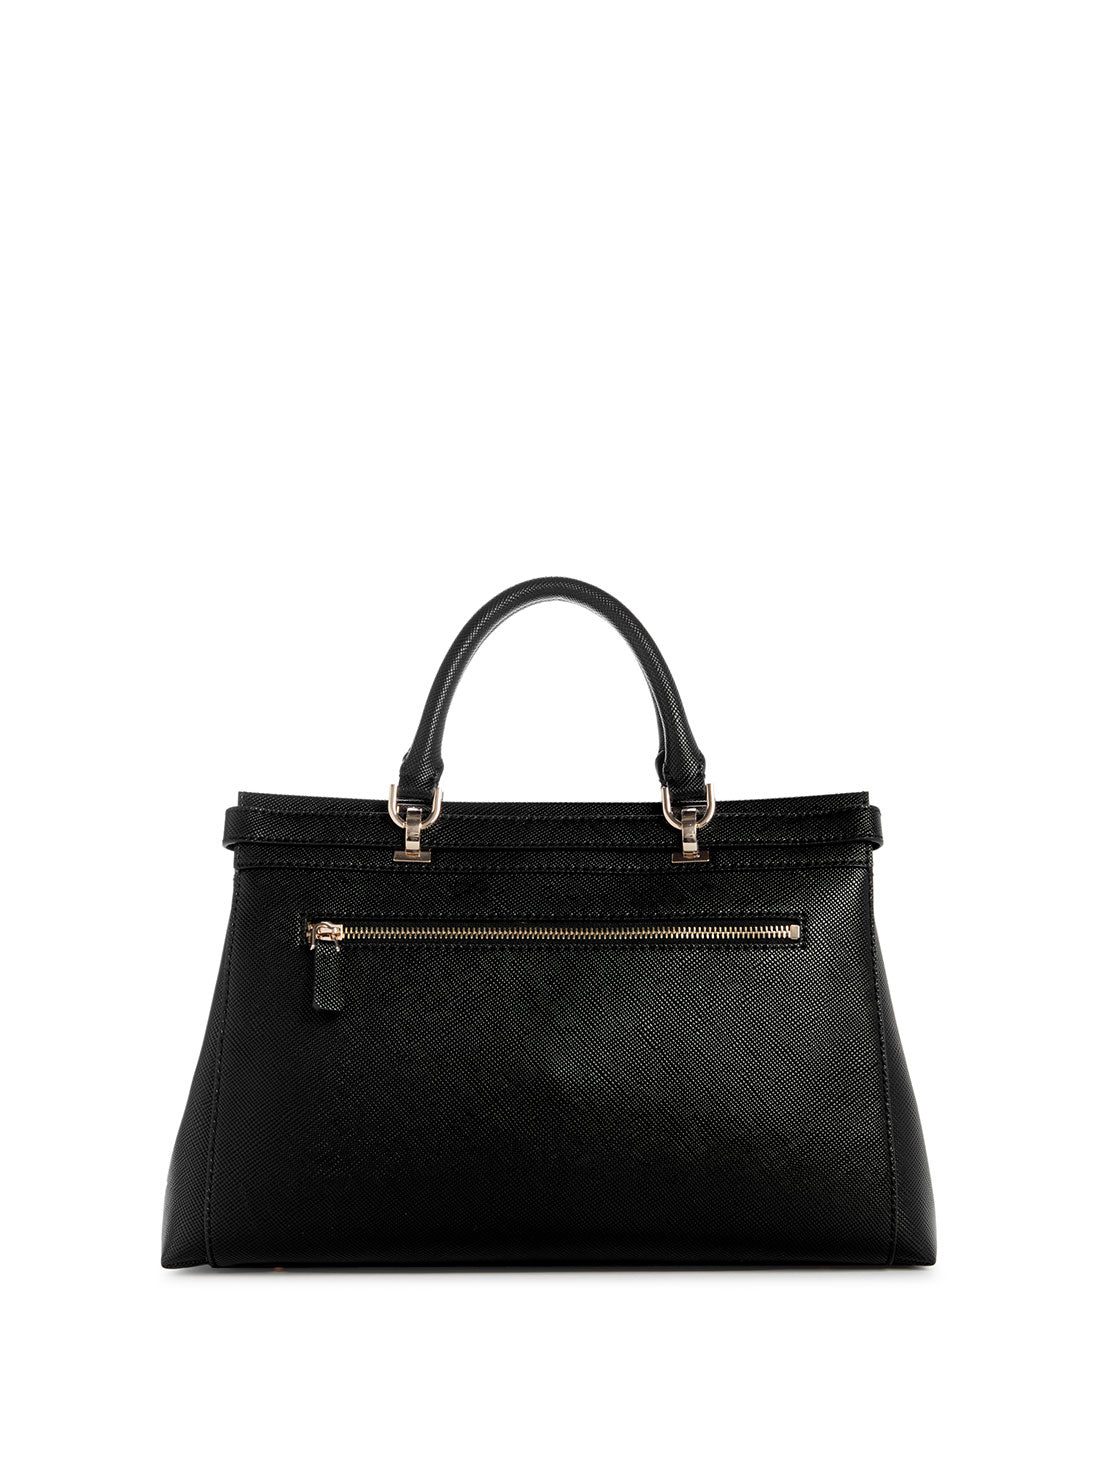 GUESS Black Levante Luxury Satchel Bag back view